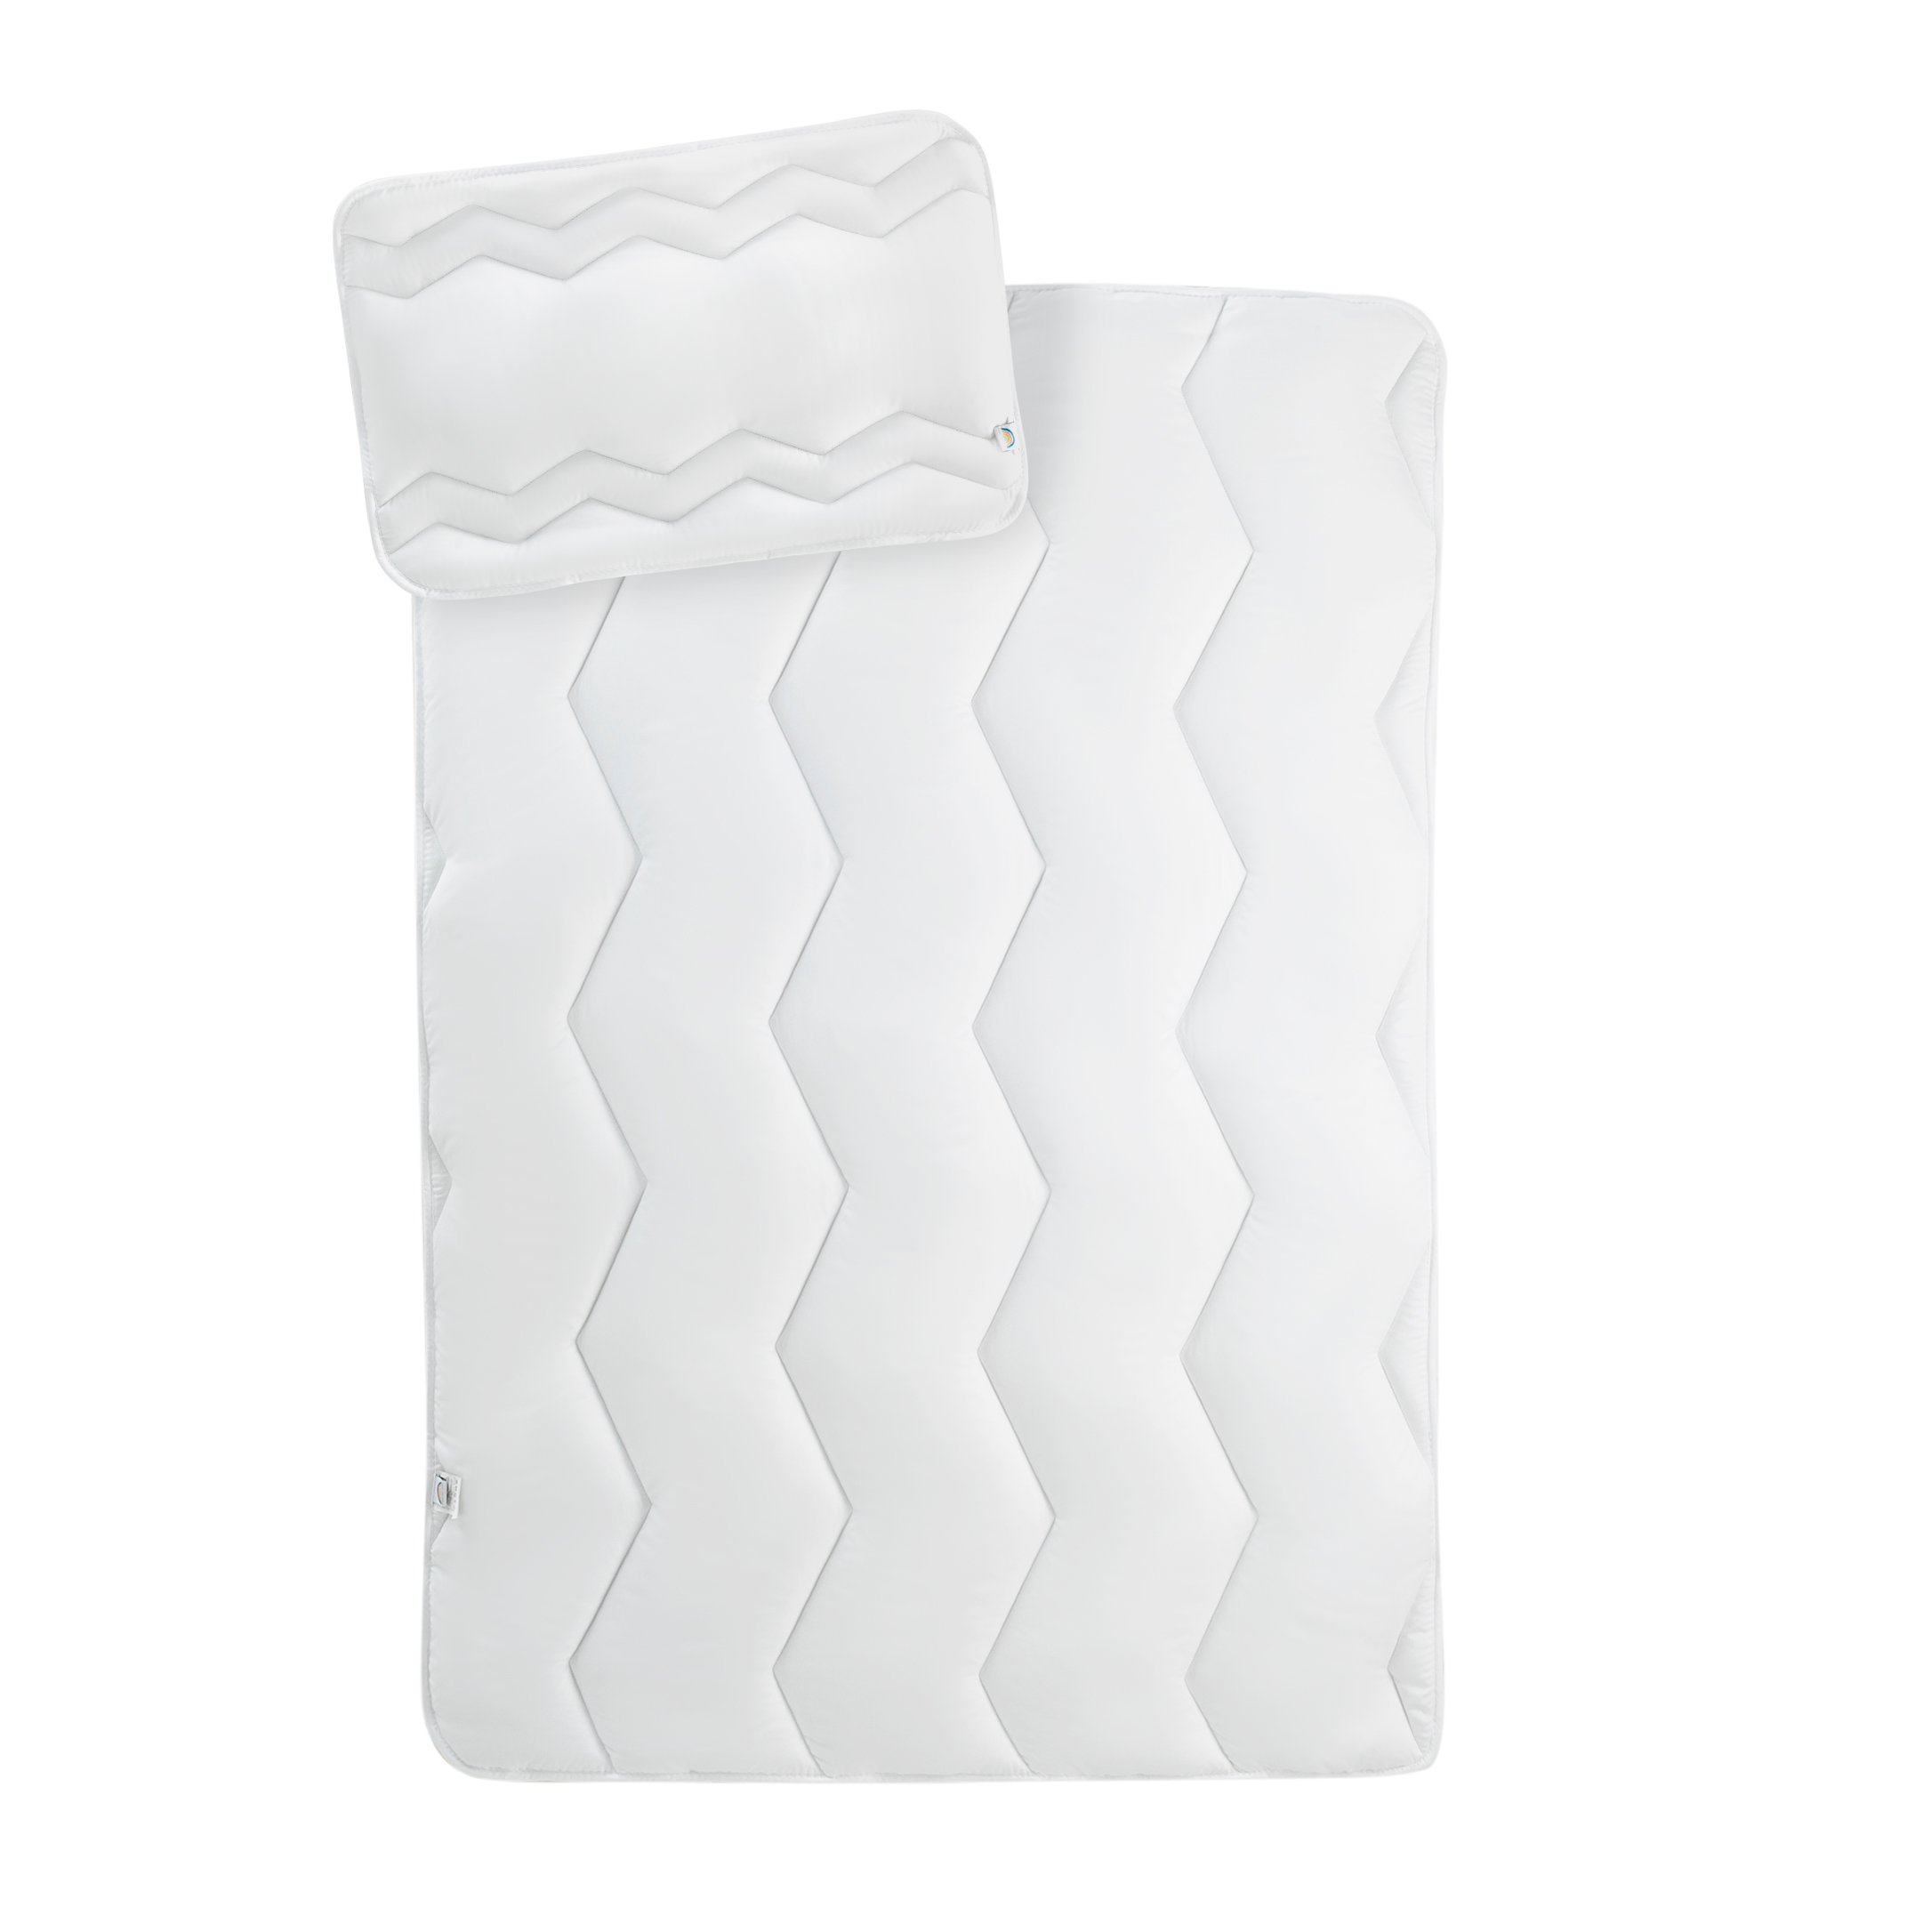 Набор в кроватку Papaella Comfort: одеяло 135x100 см + подушка 60х40 см (8-29611 білий) - фото 1